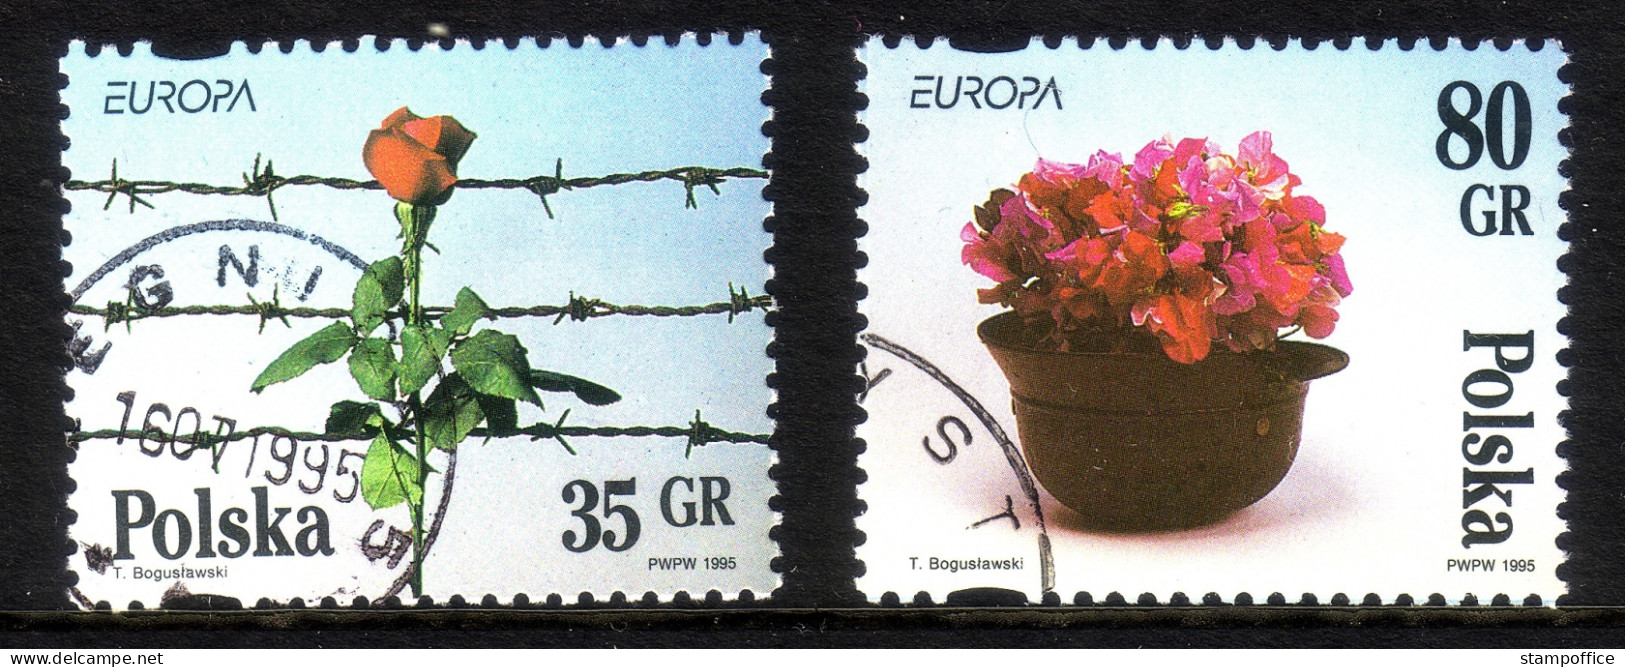 POLEN MI-NR. 3533-3534 GESTEMPELT EUROPA 1995 - FRIEDEN Und FREIHEIT ROSE - 1995